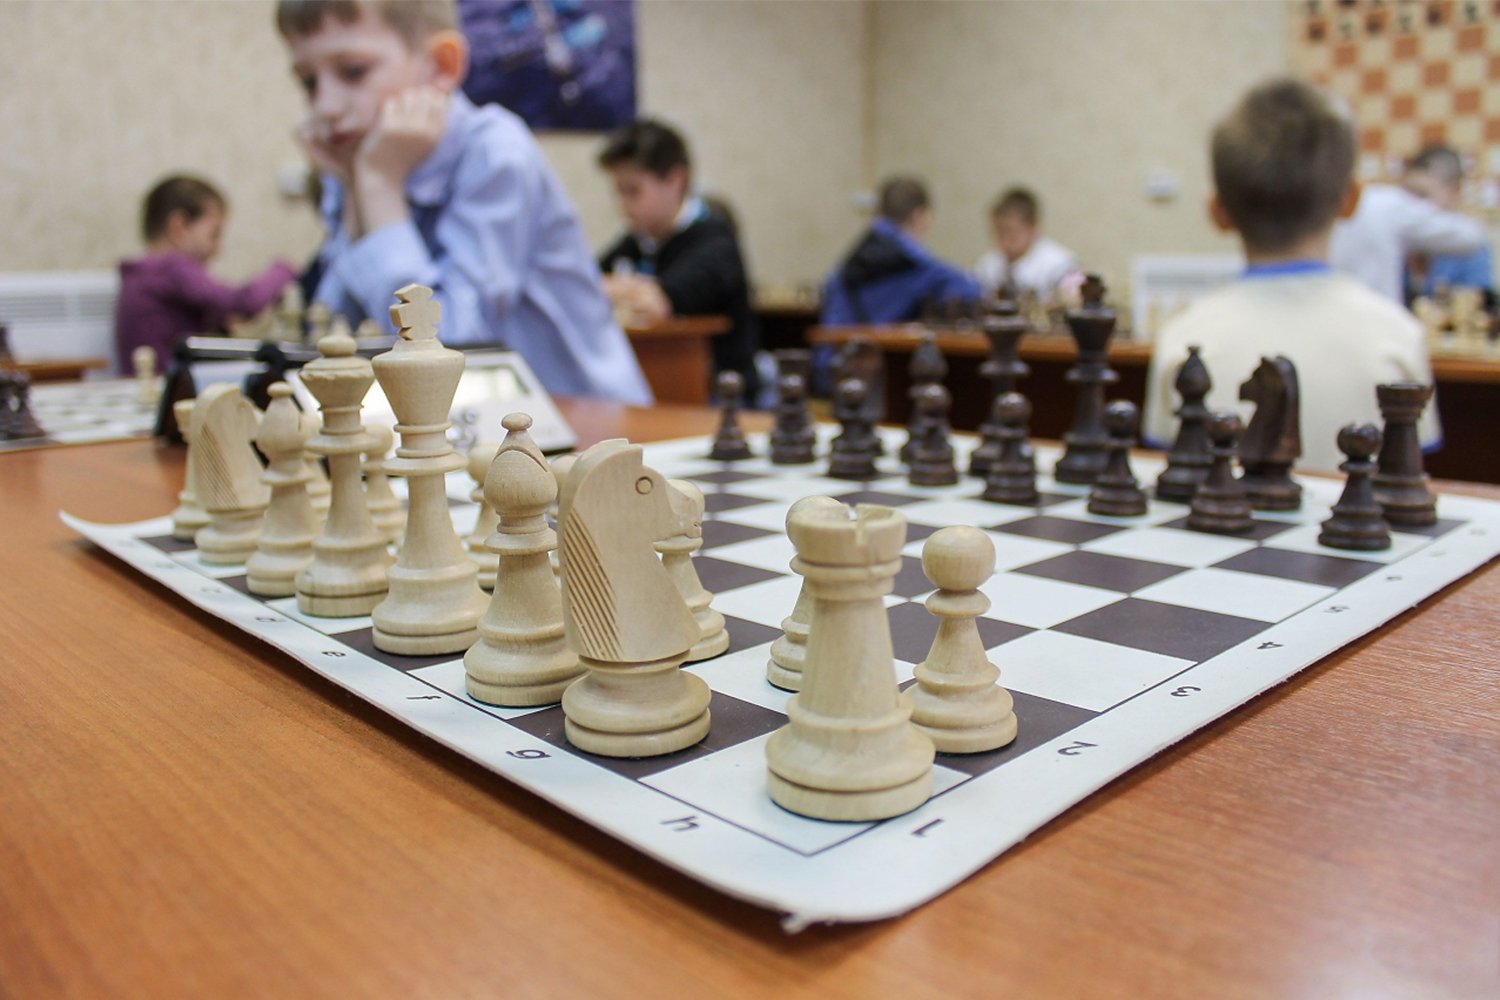 Рождественский турнир по шахматам пройдет в Твери